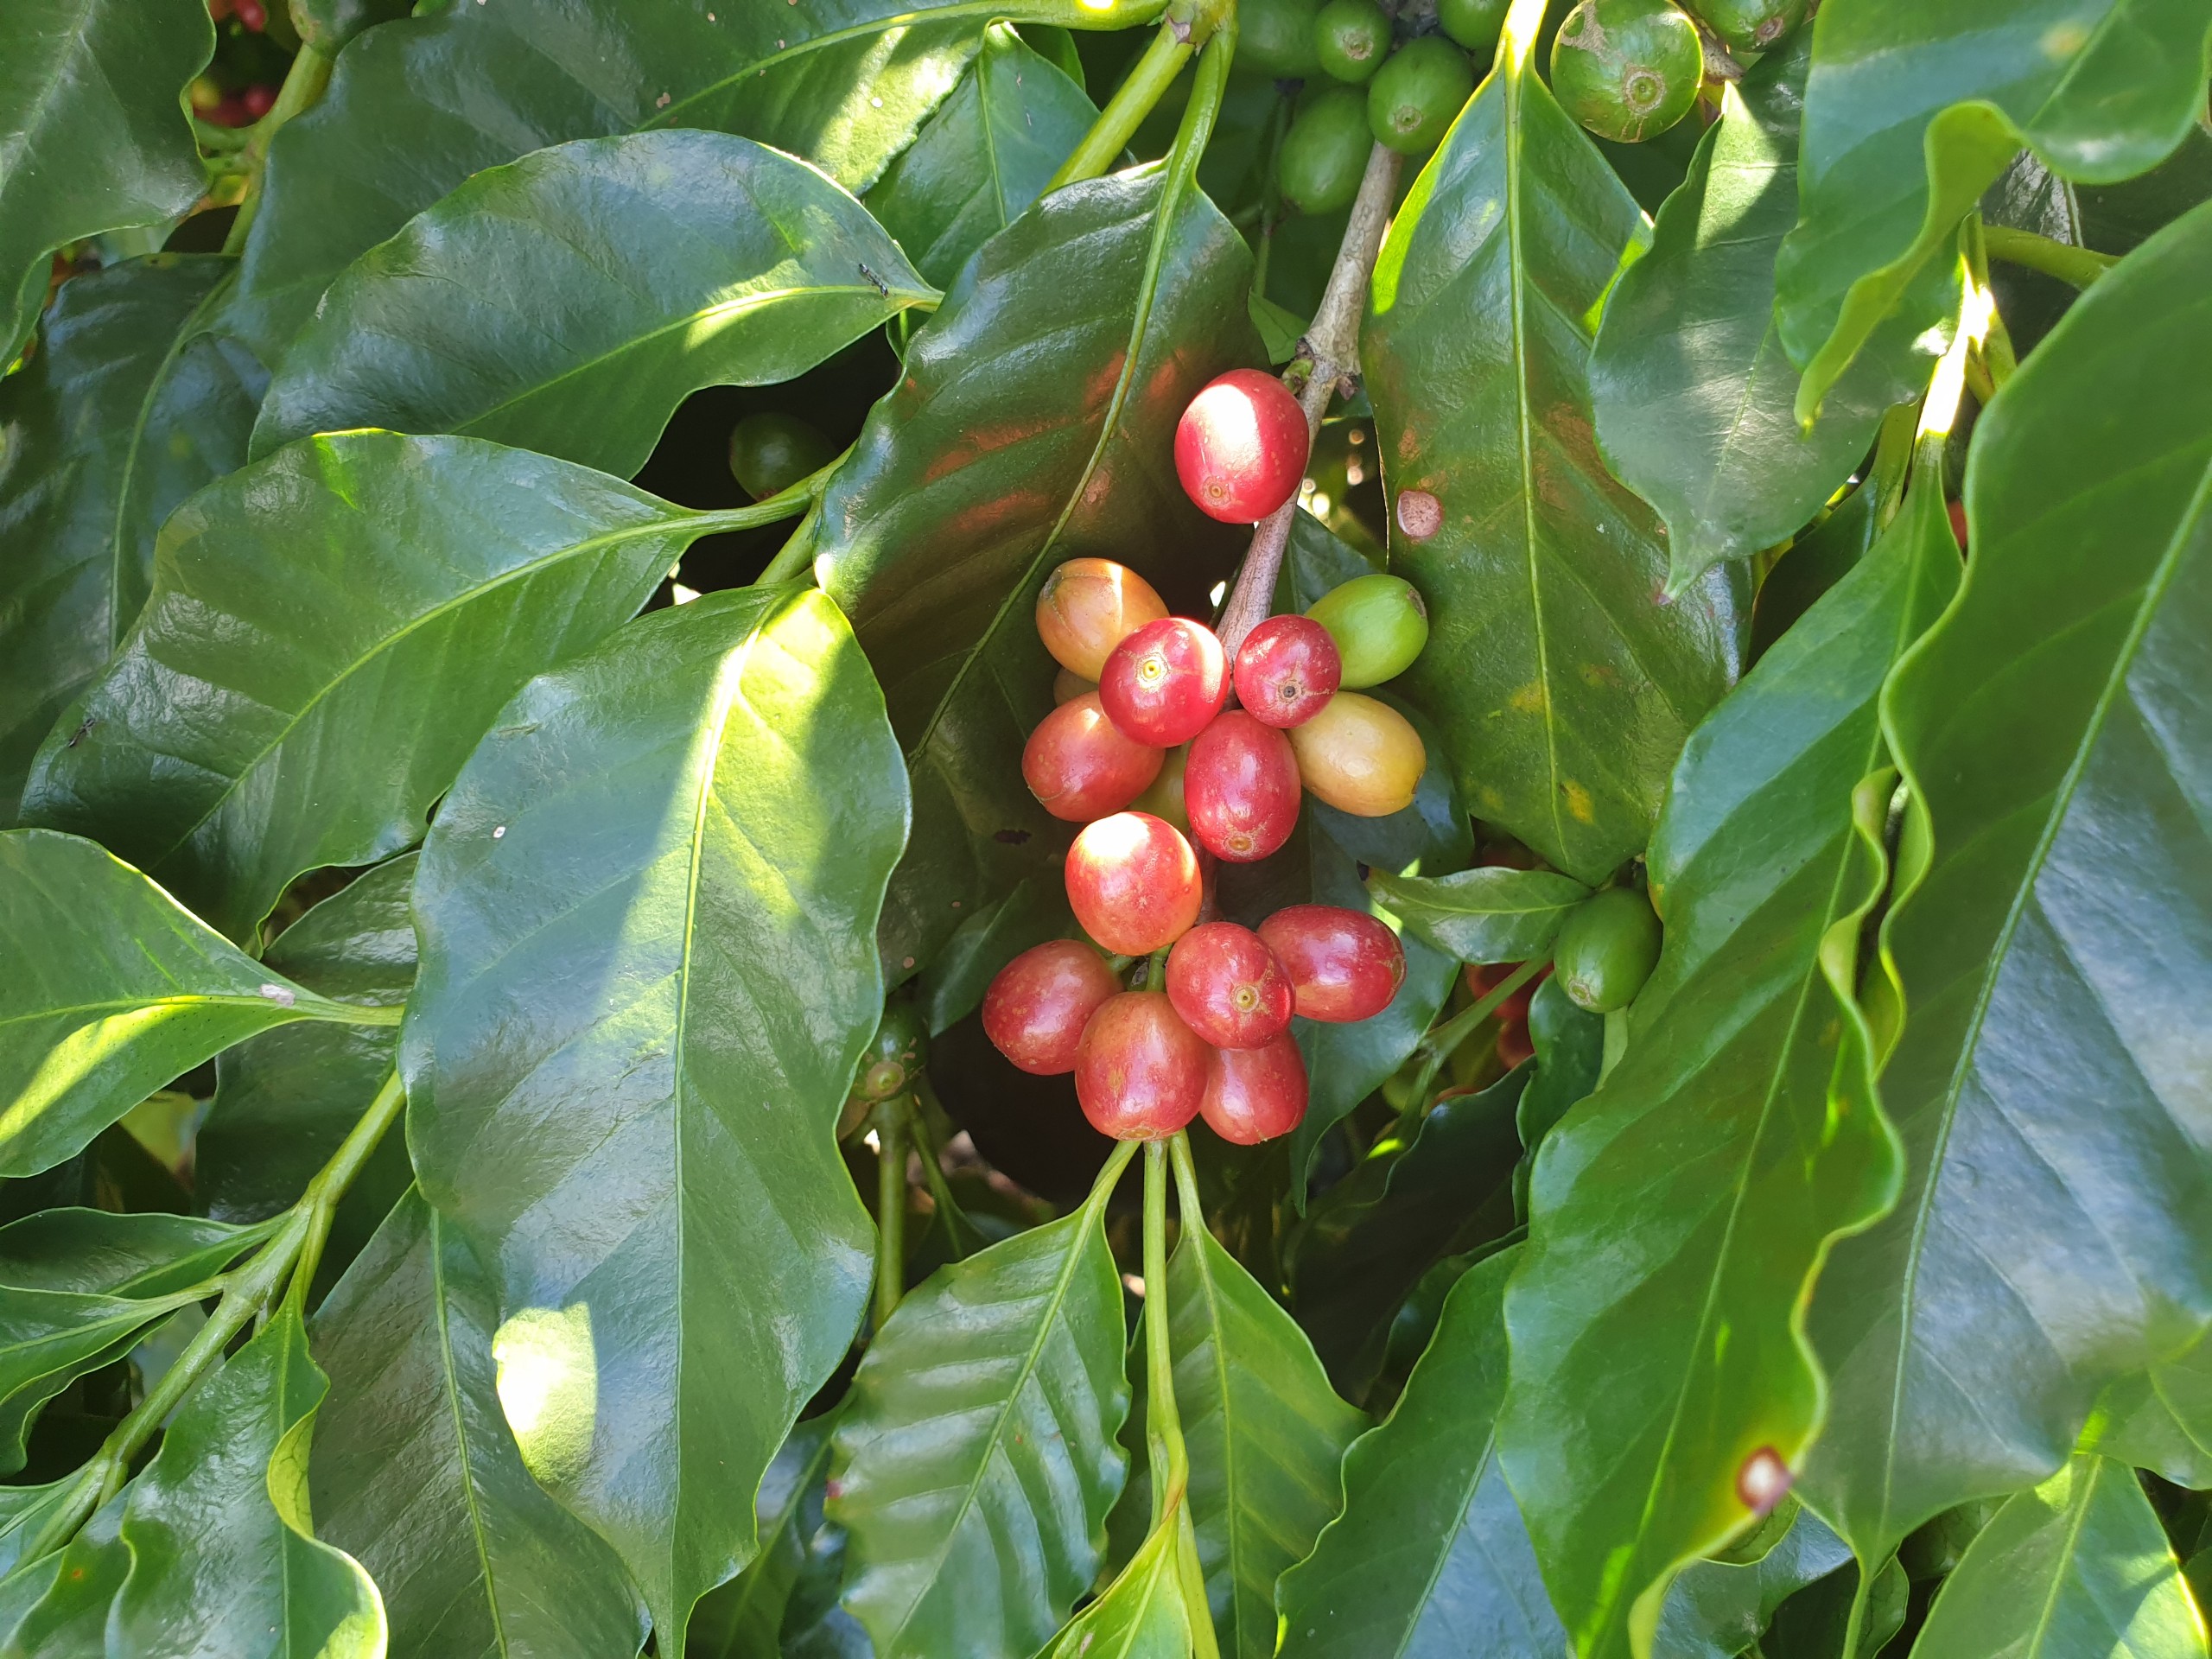 Đặc Sản Huế - Cà phê đặc sản Huế - Arabica A Lưới (chế biến ướt) Greenfields Coffee 250g - Phin - Xay sẵn